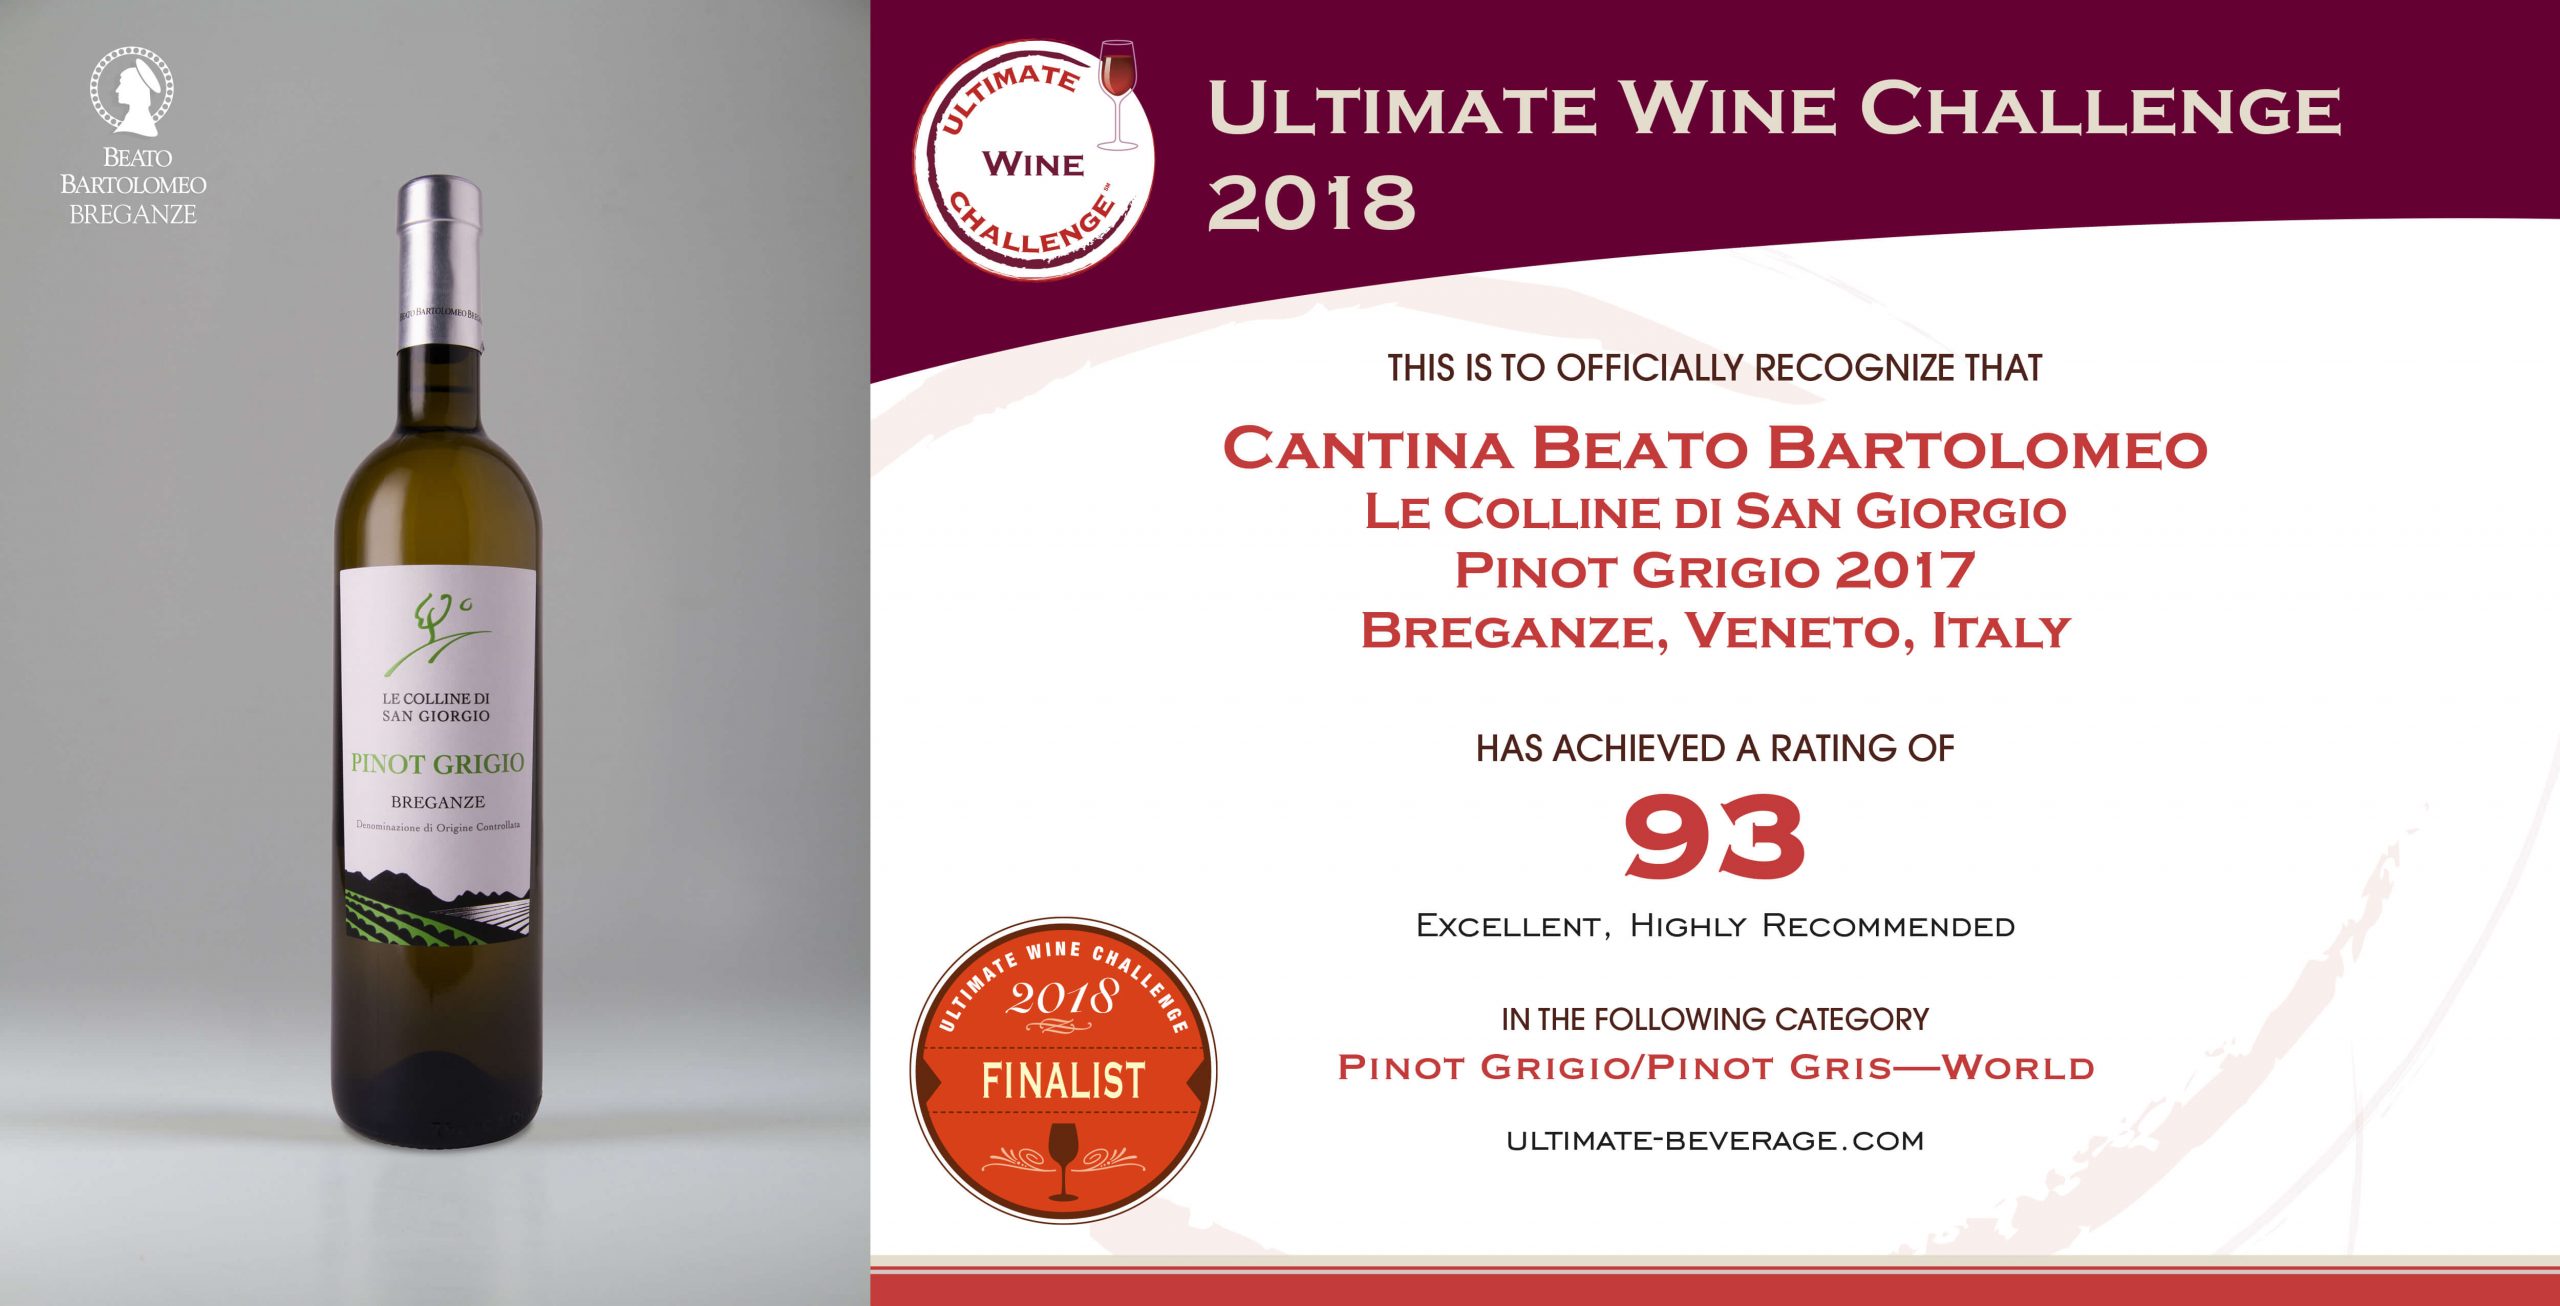 Pinot Grigio Breganze DOC “Le Colline di San Giorgio” Ultimate Wine Challenge 2018